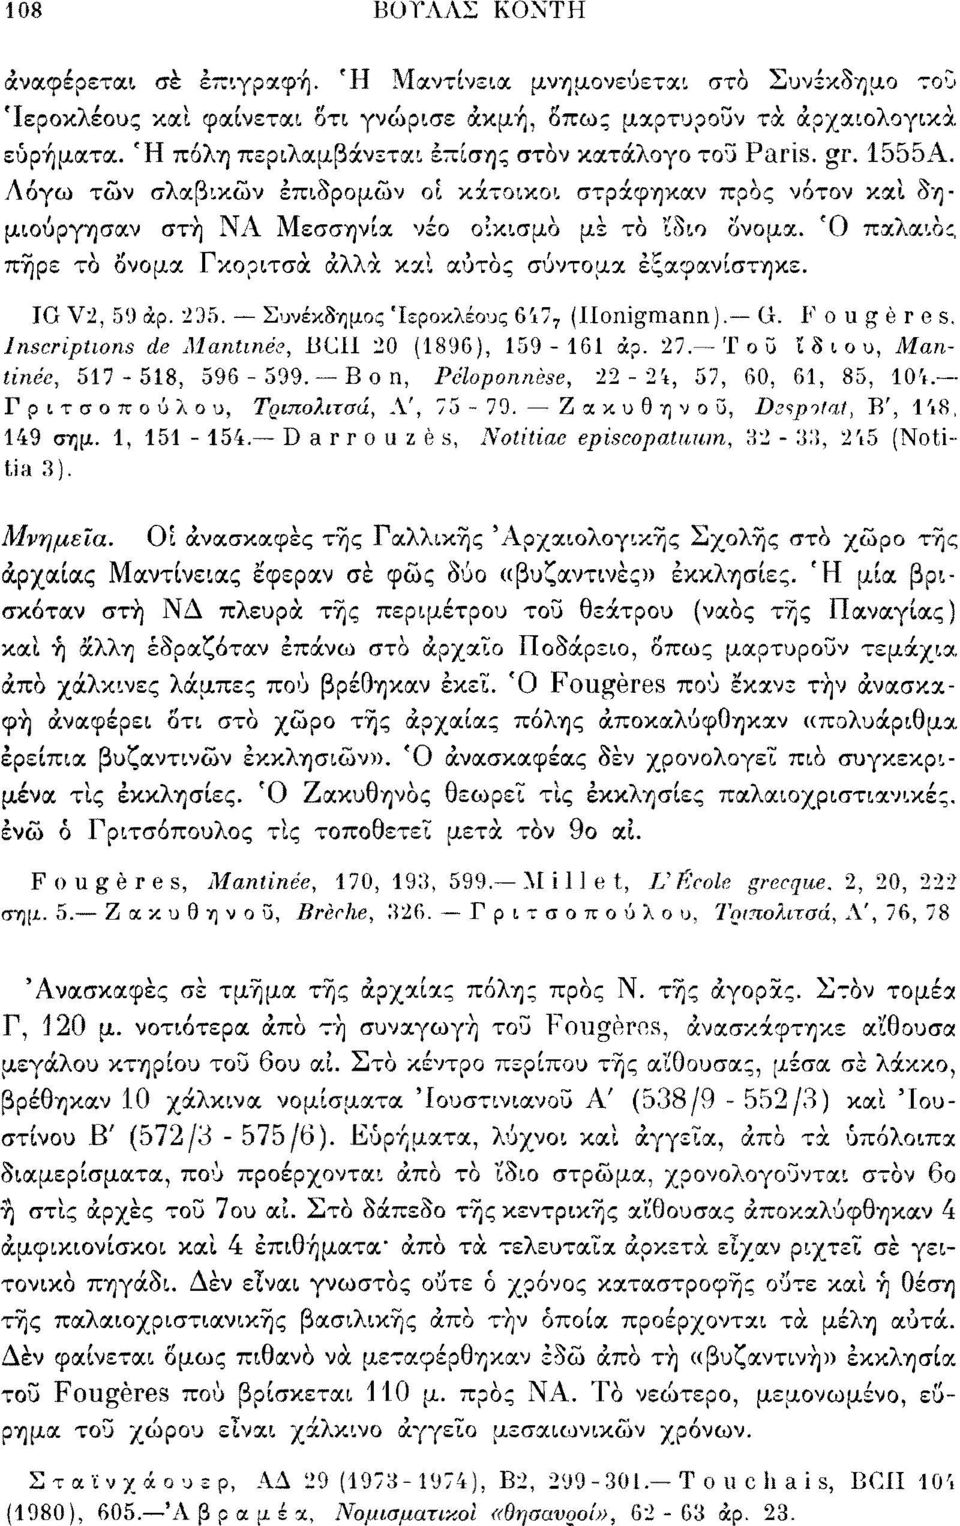 Ό παλαιός πήρε τό Ονομα Γκοριτσά άλλα καί αυτός σύντομα εξαφανίστηκε. IG V2, 59 άρ. 235. Συνέκδημος Ίεροκλέους 647 7 (Ilonigraann). G. Fougères. Inscriptions de Mantinée, BC11 20 (1896), 159-161 άρ.